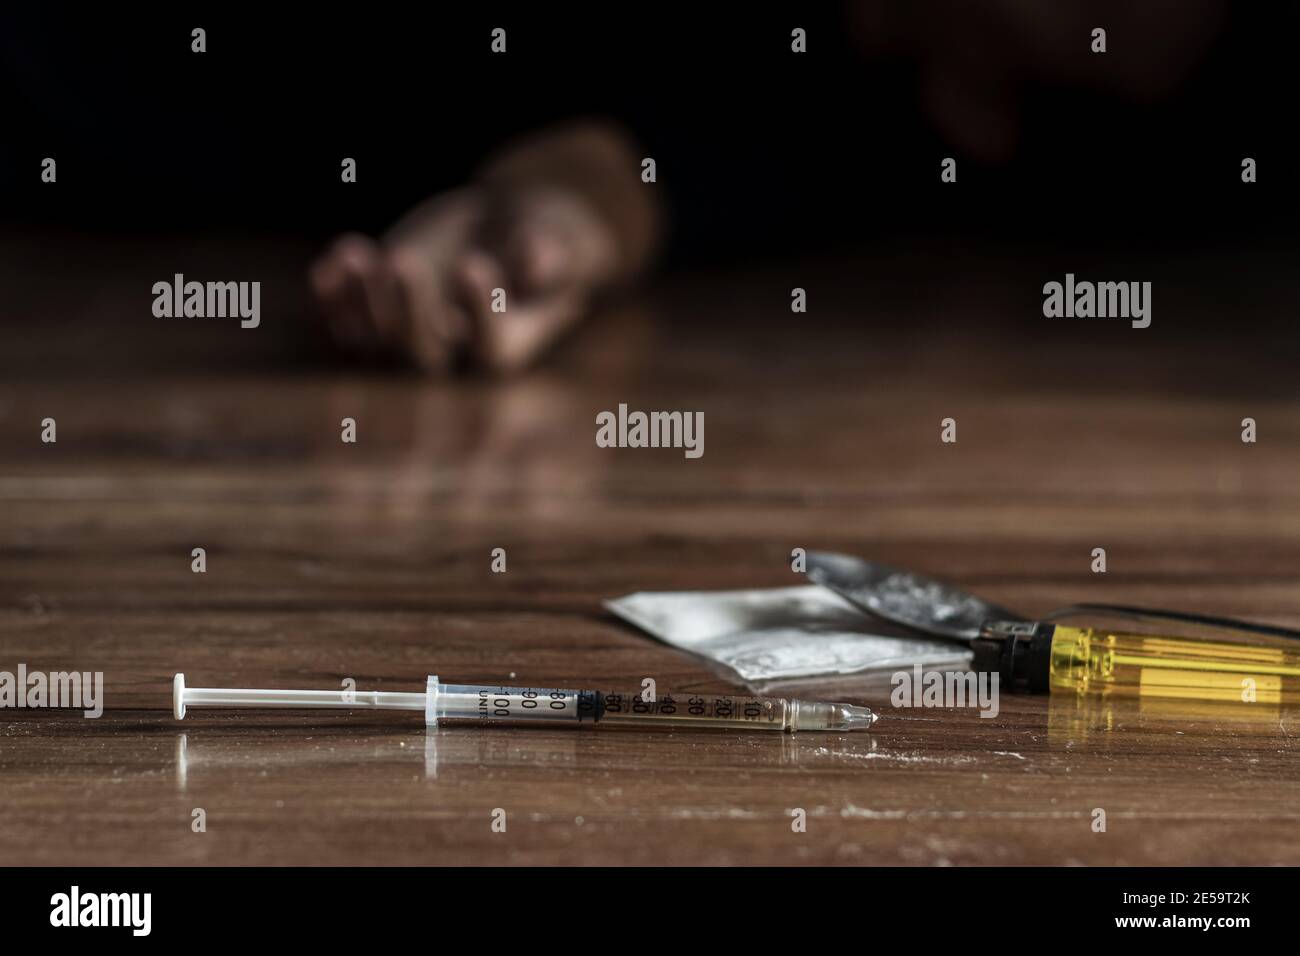 addict de drogue, concept de problème de junkie. gros plan de la seringue de drogue et de l'héroïne cuite sur le sol avec la main de drogue de tendre la main hors de fond noir Banque D'Images